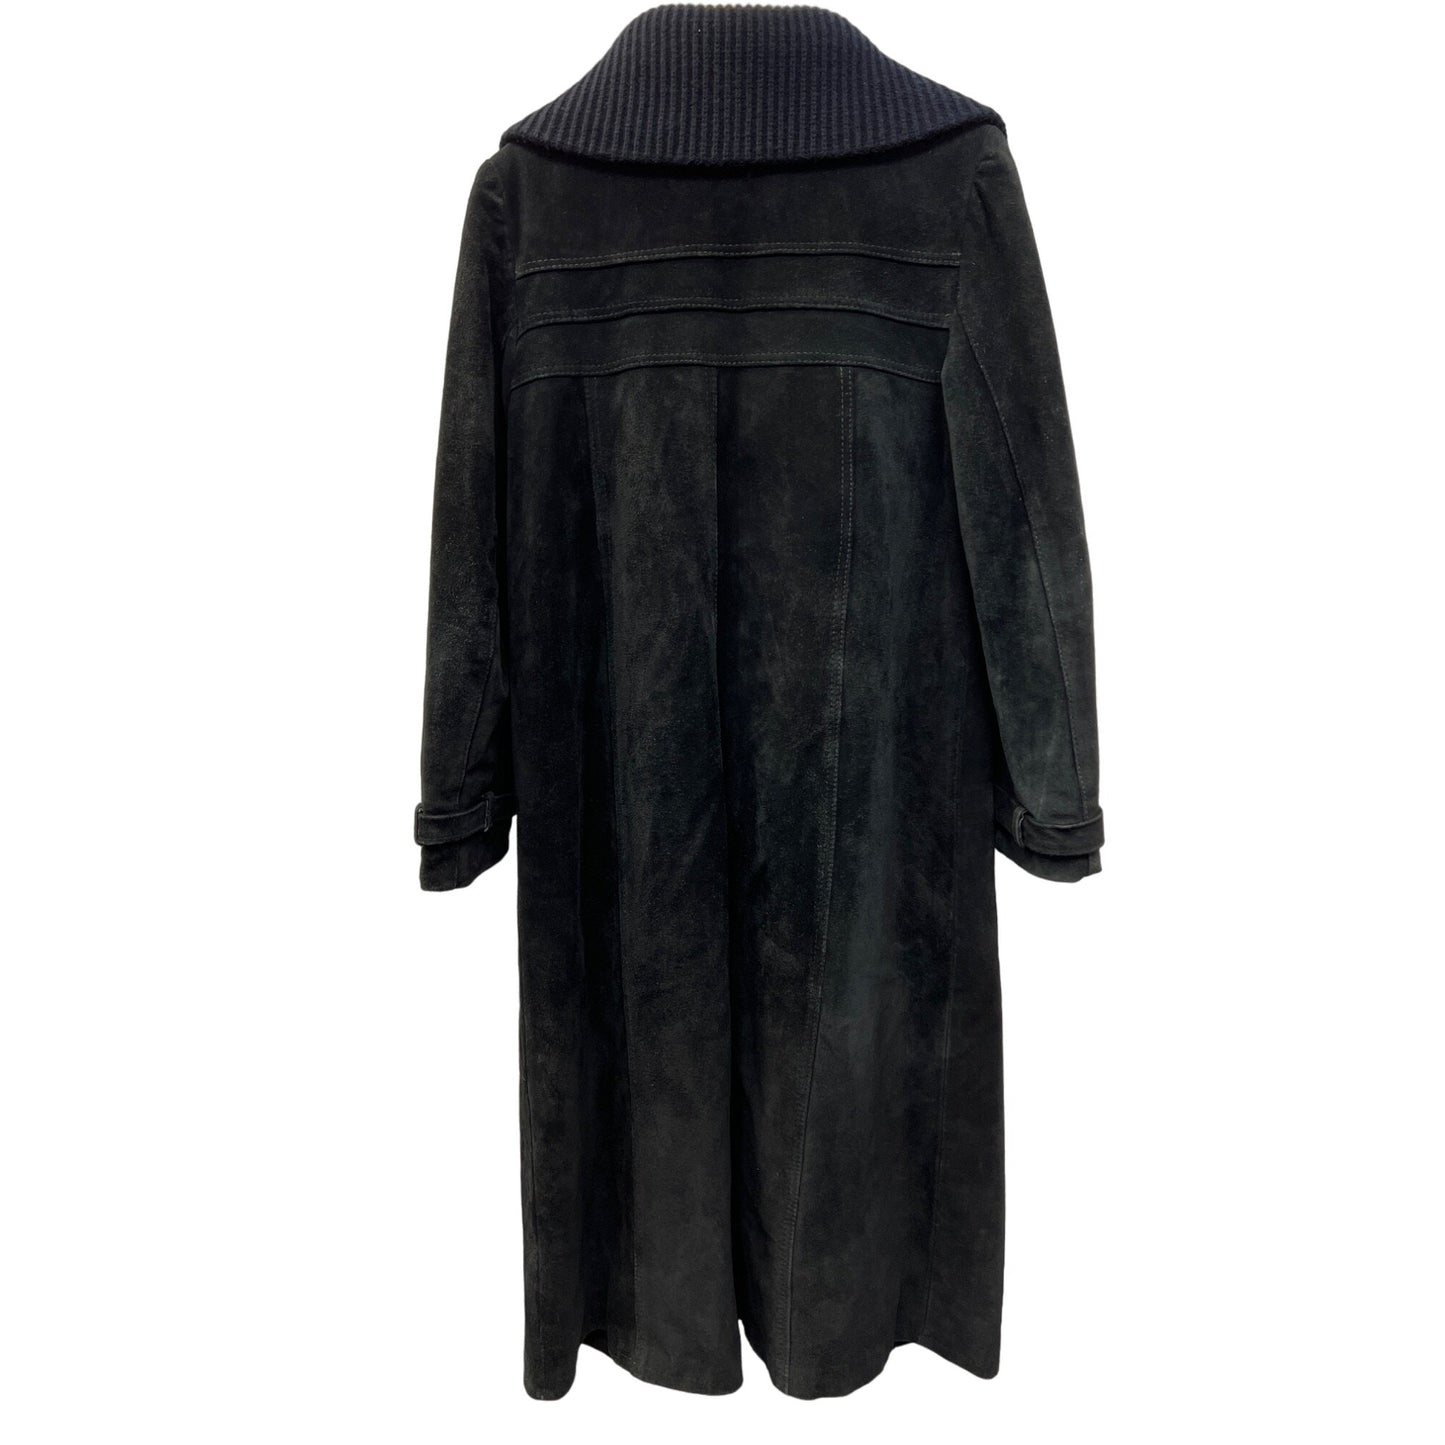 Vintage Long Black Suede Coat Made in Argentina